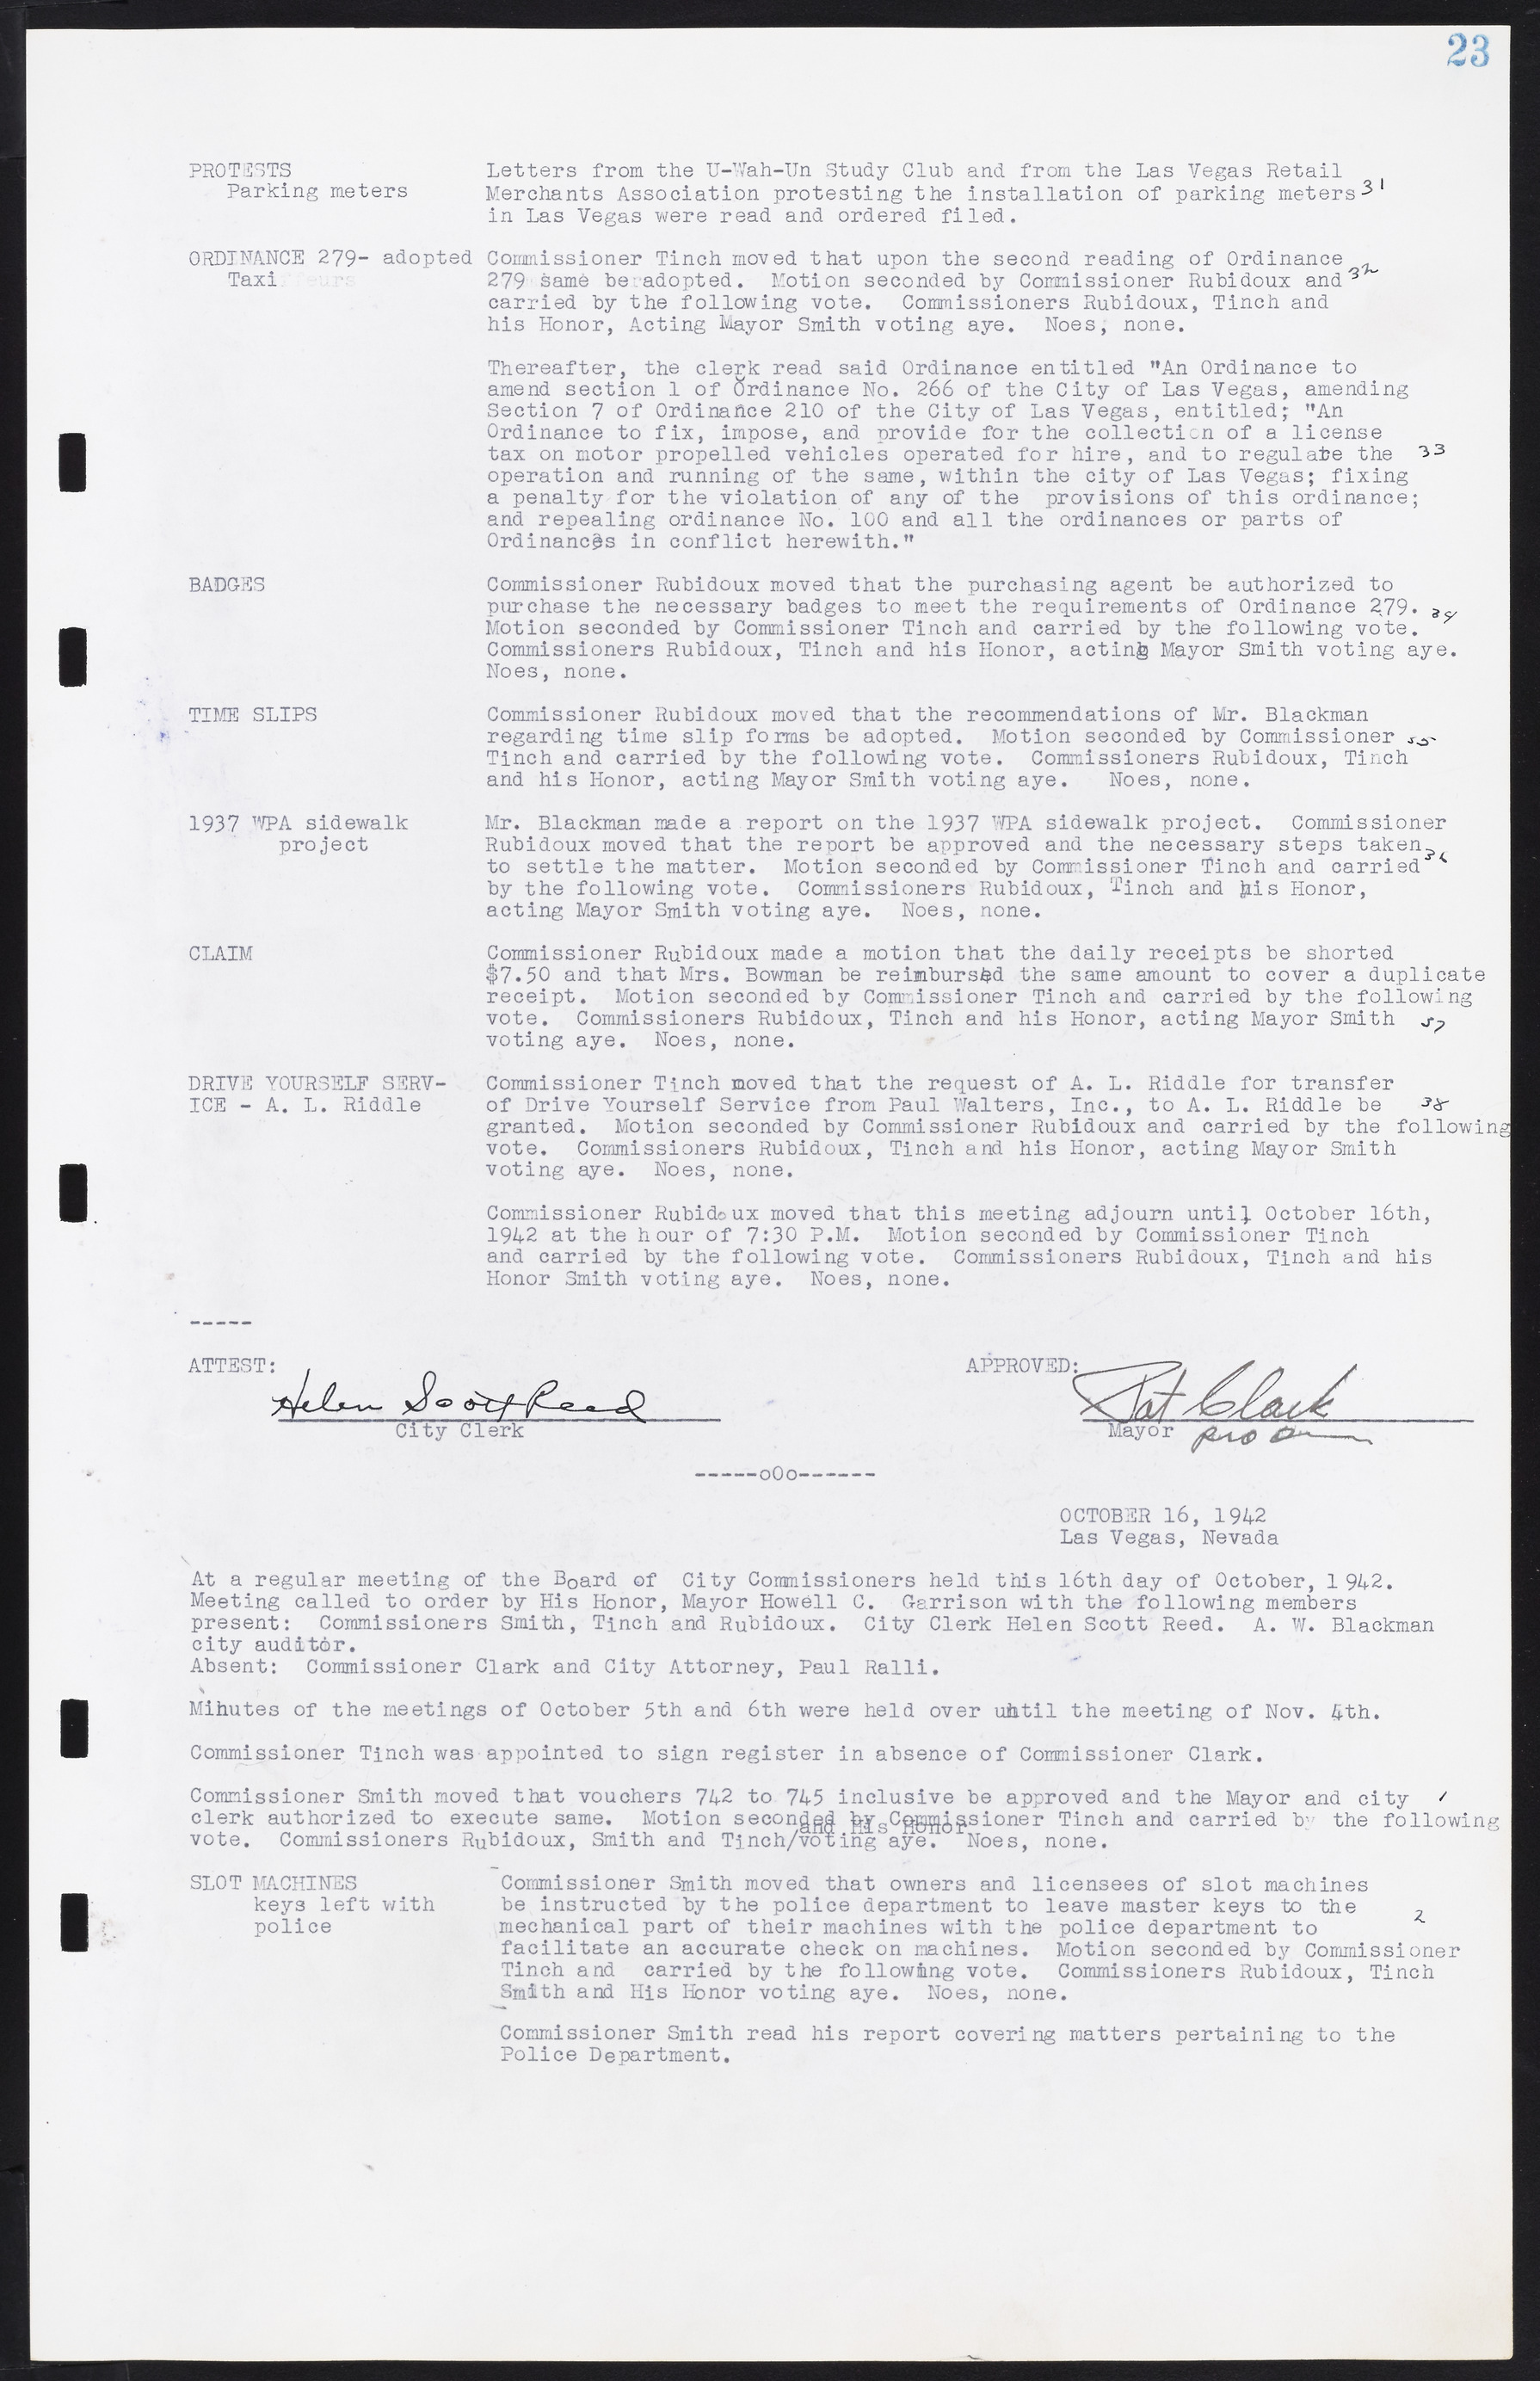 Las Vegas City Commission Minutes, August 11, 1942 to December 30, 1946, lvc000005-32